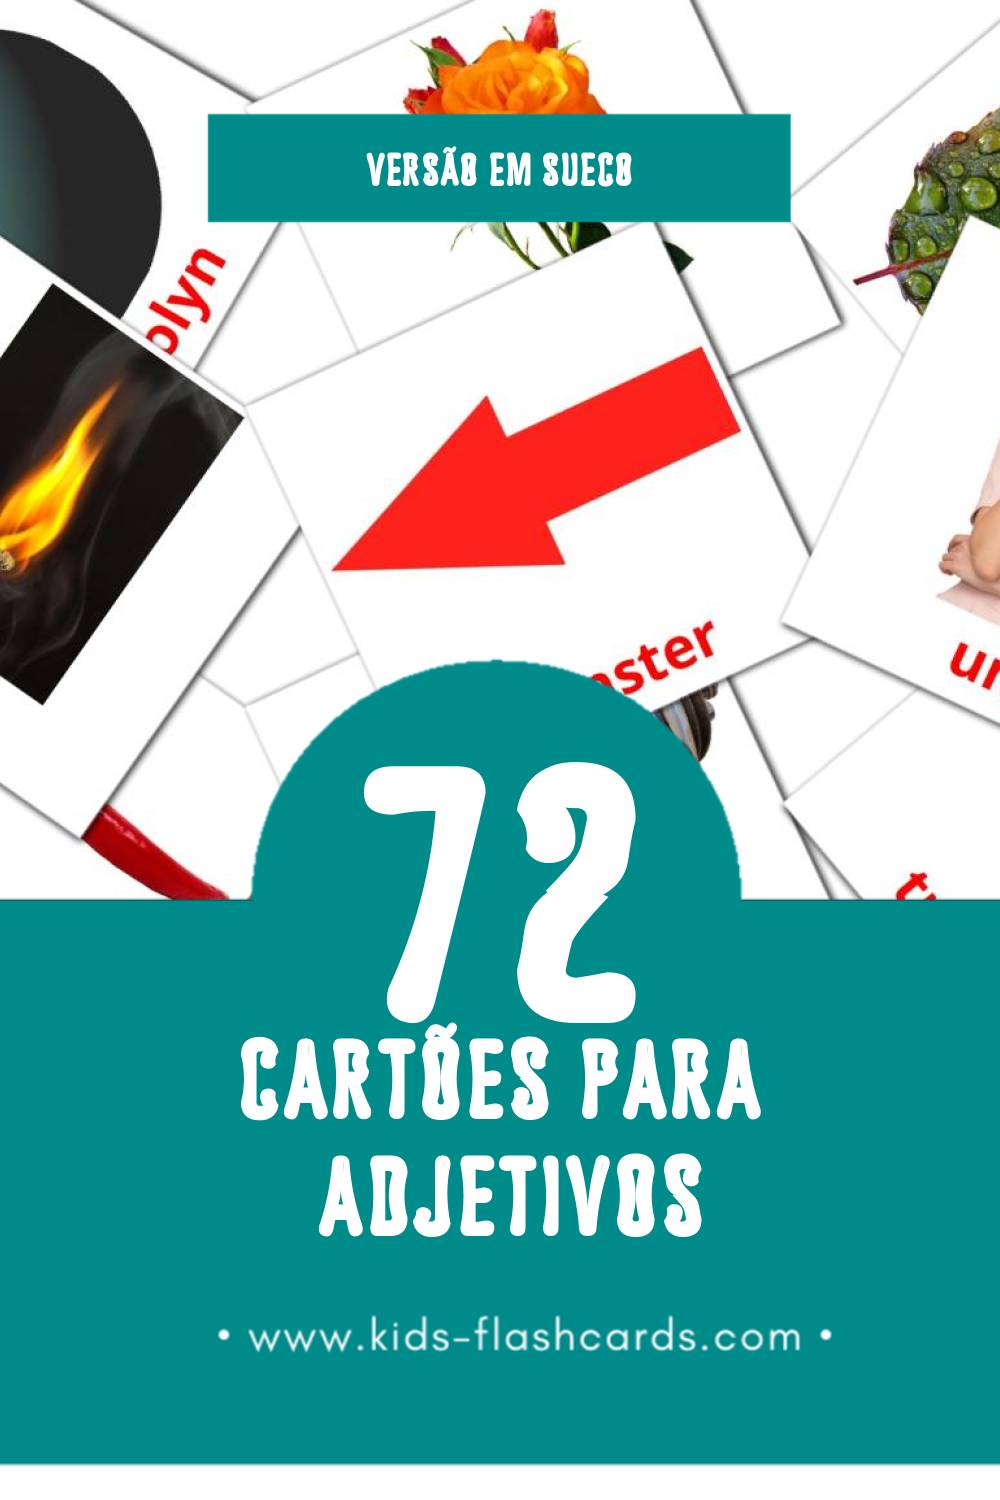 Flashcards de Adjektiv Visuais para Toddlers (72 cartões em Sueco)